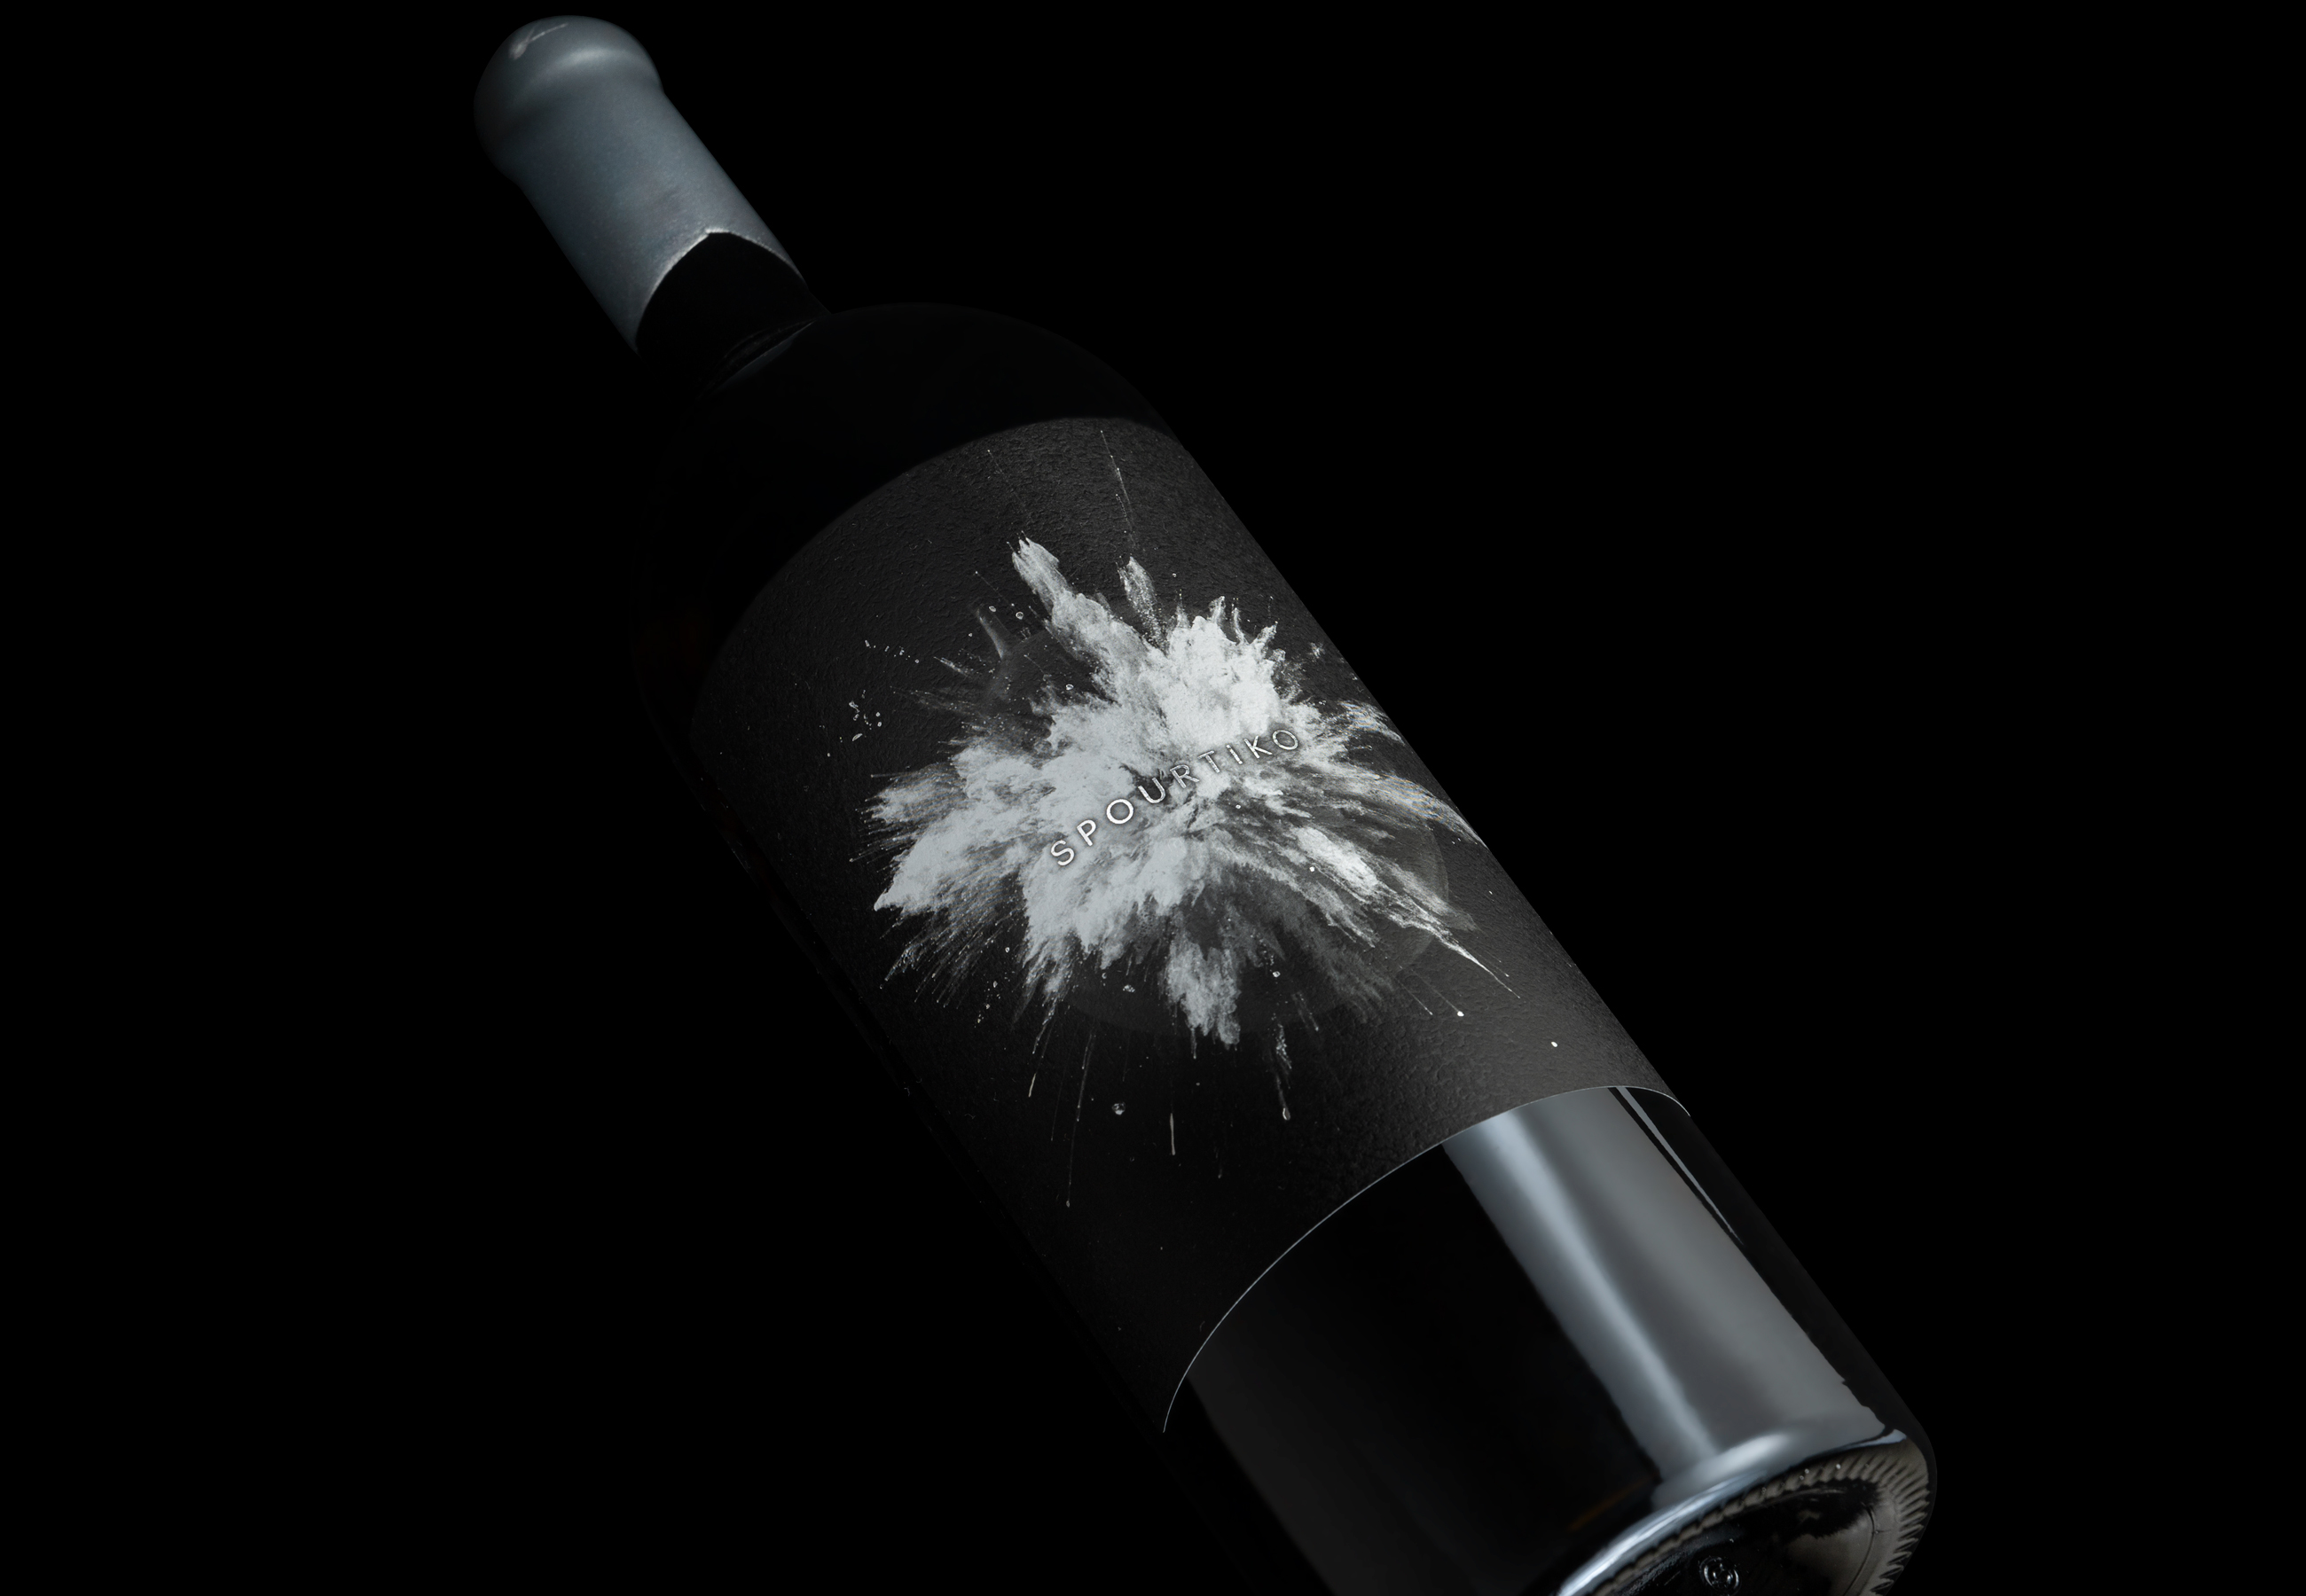 Spourtiko Cypriot Wine Concept by Marios Karystios